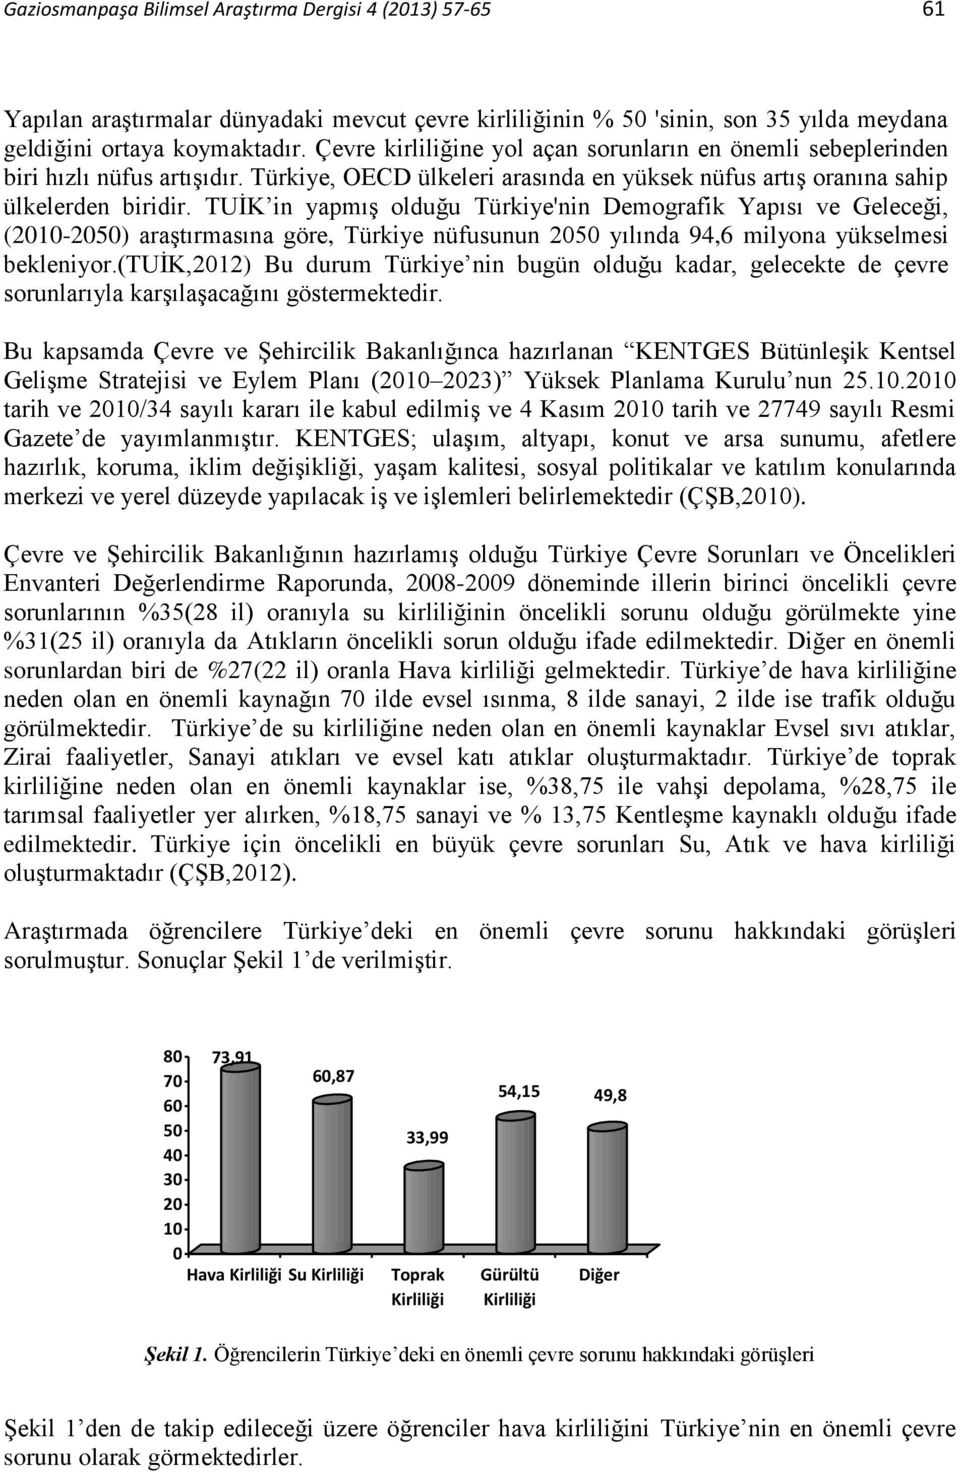 TUİK in yapmış olduğu Türkiye'nin Demografik Yapısı ve Geleceği, (2010-2050) araştırmasına göre, Türkiye nüfusunun 2050 yılında 94,6 milyona yükselmesi bekleniyor.